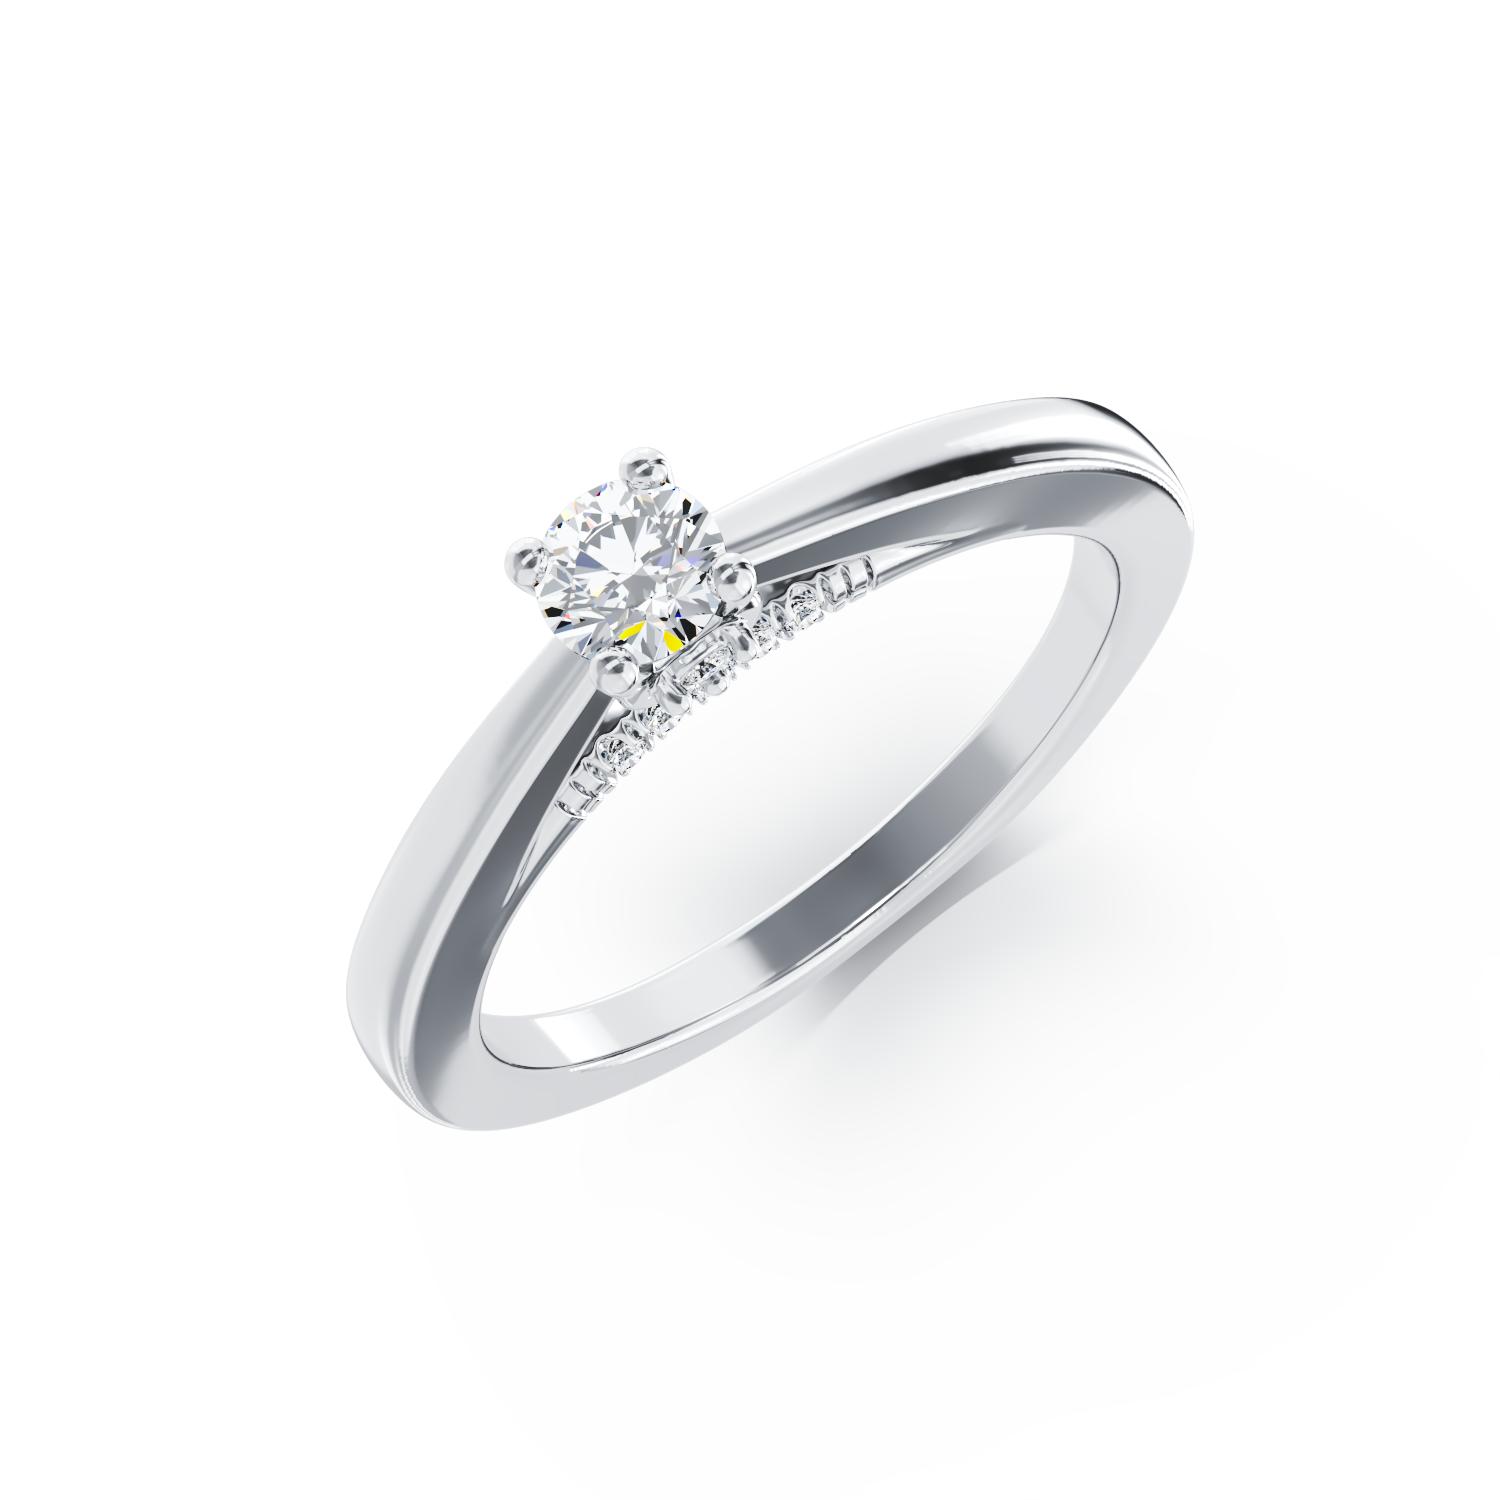 Eljegyzési gyűrű 18K-os fehér aranyból 0,31ct gyémánttal és 0,04ct gyémántokkal. Gramm: 2,97